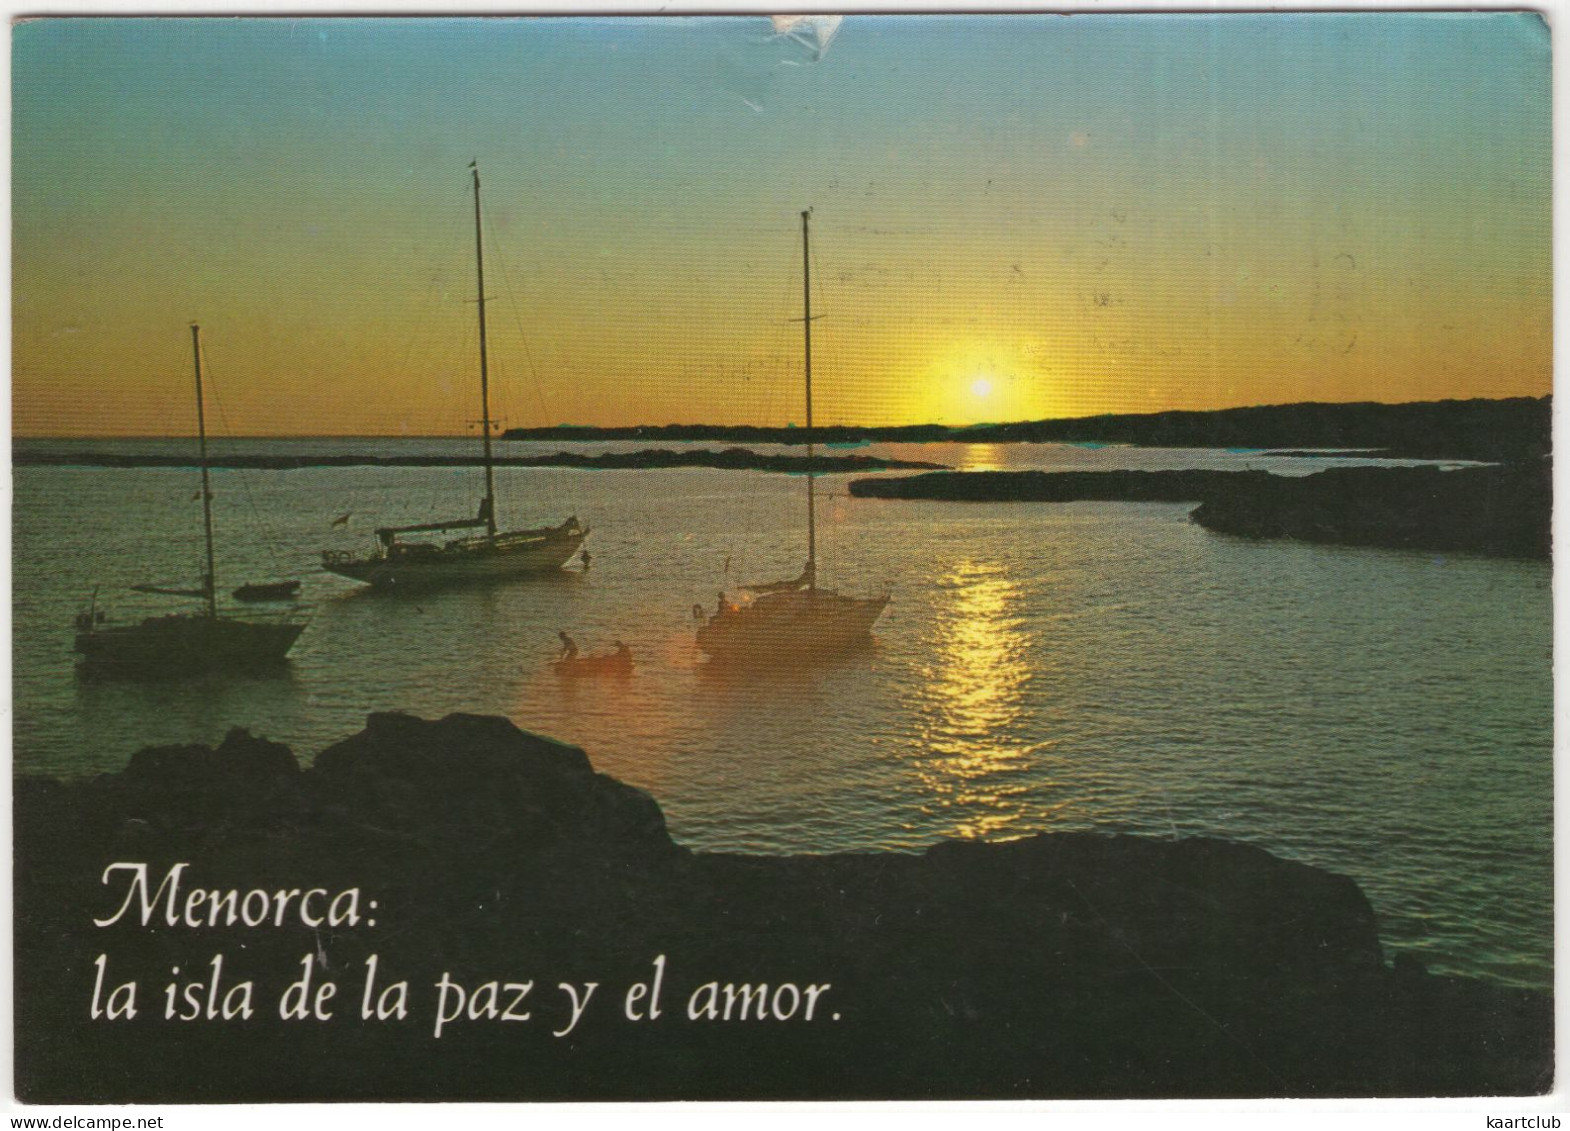 Menorca - La Isla De La Paz Y El Amor. - Binissafuller Puesta De Sol - (Espana/Spain) - Menorca